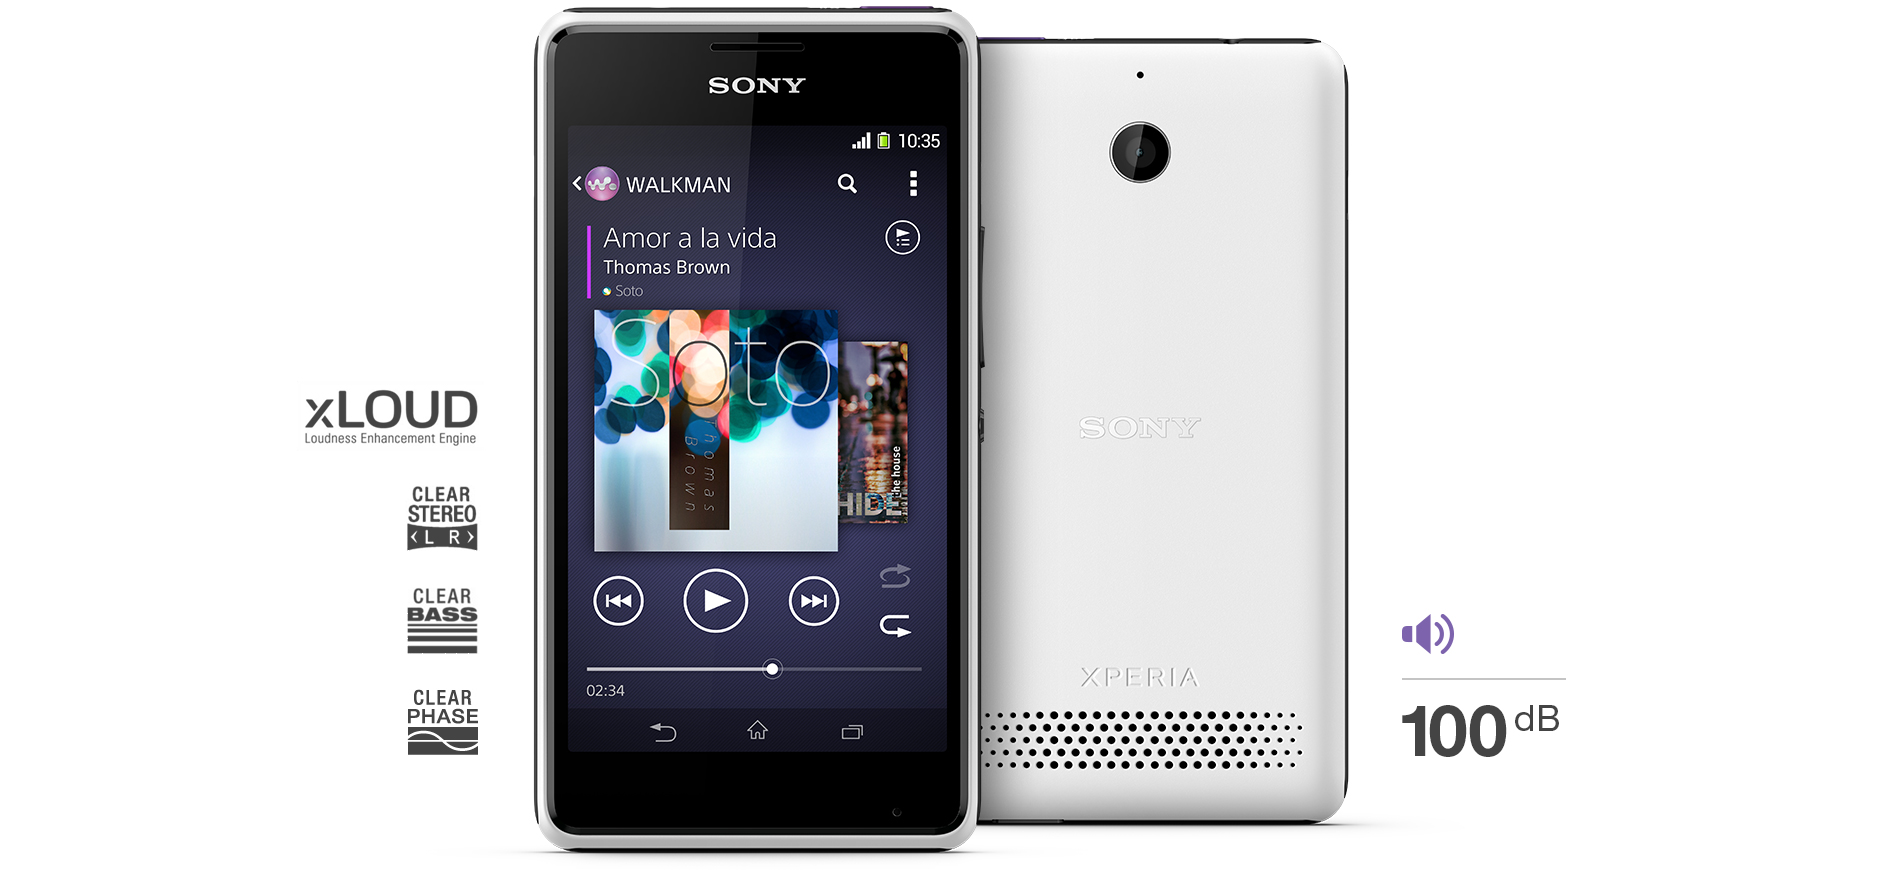 Sony Xperia E1 là mẫu smartphone giá rẻ nghe nhạc tốt có loa ngoài lớn nhất hiện nay